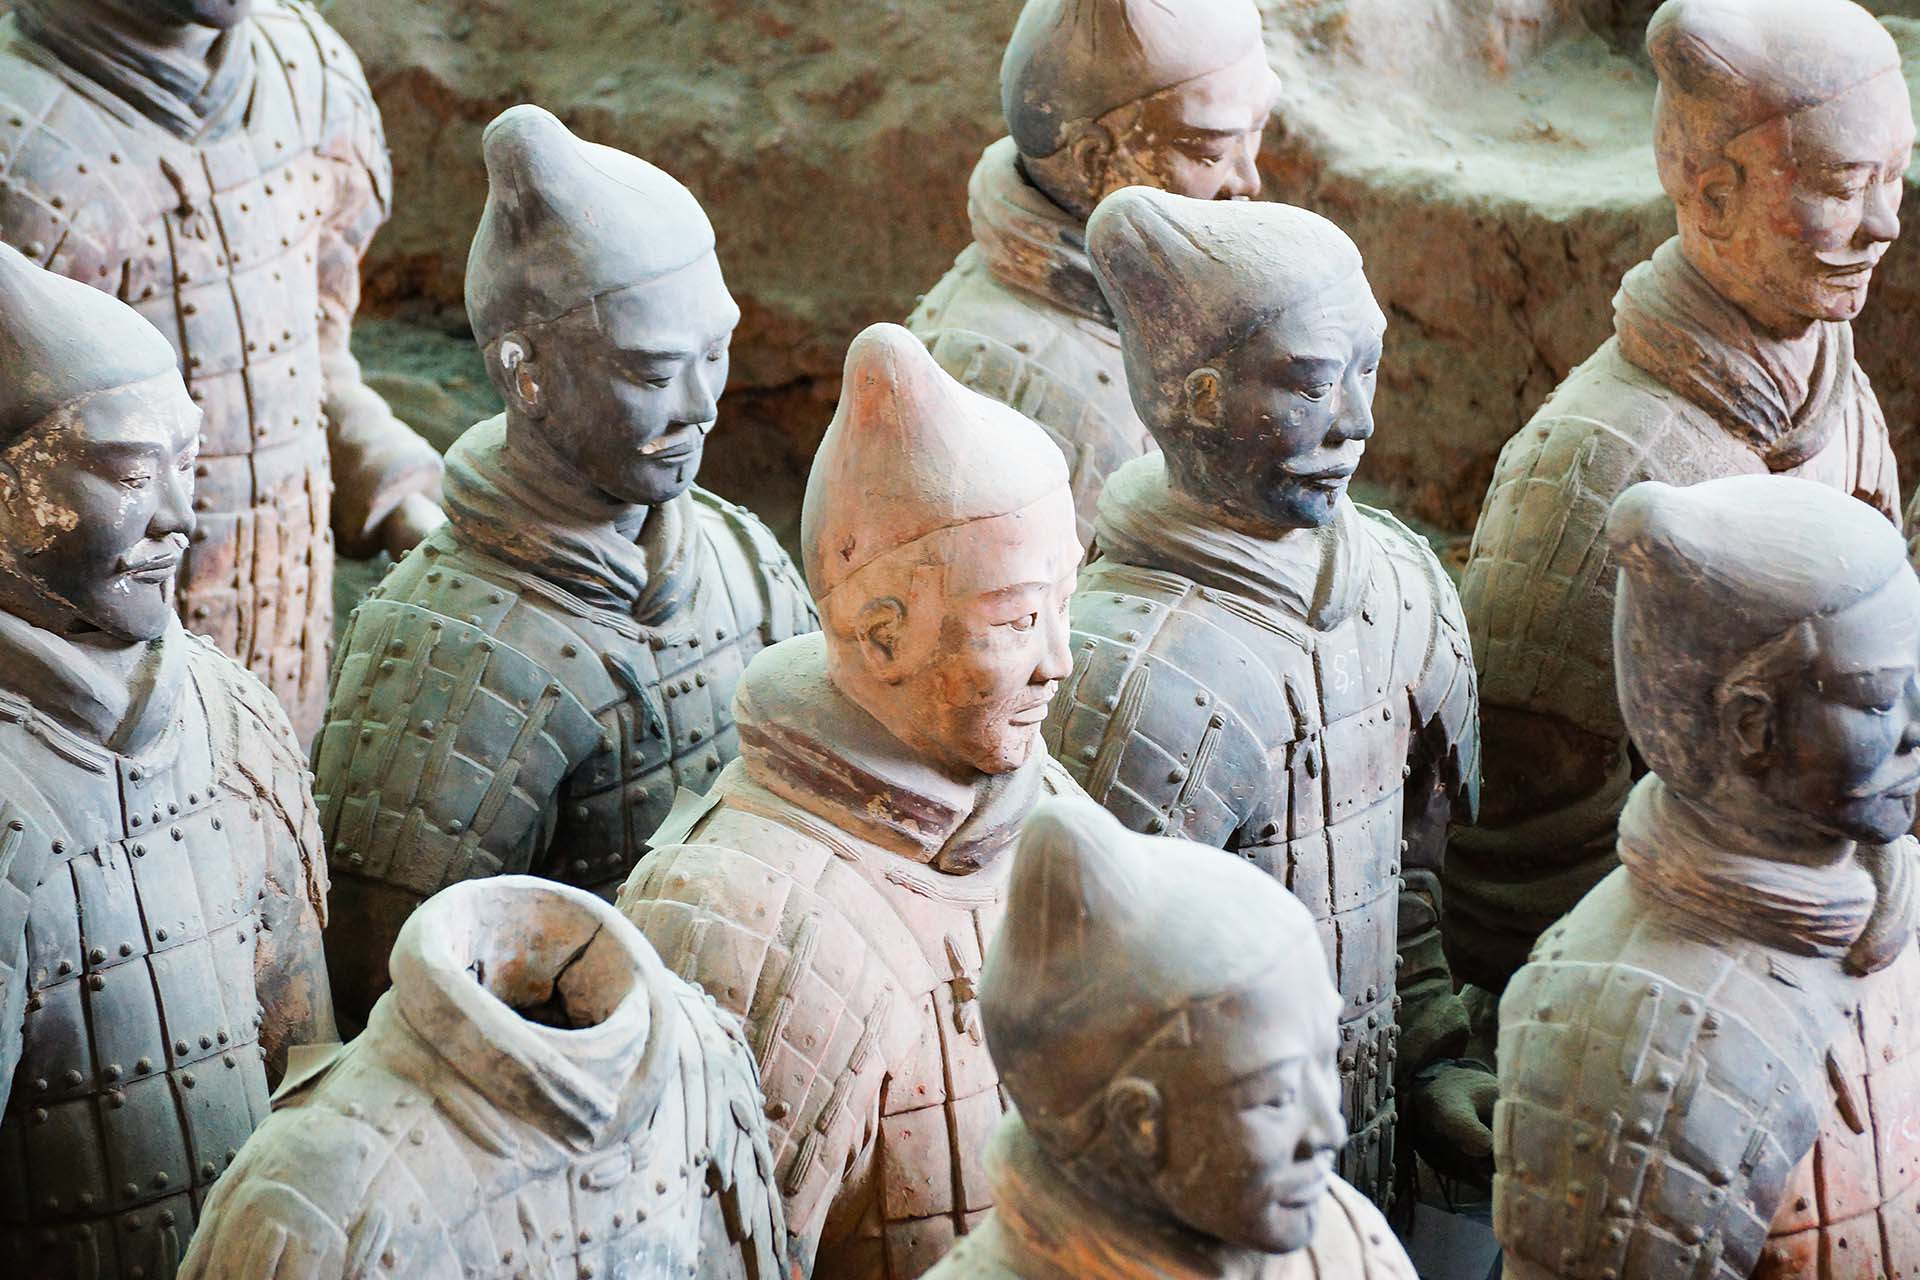 Het Terracottaleger in Xi’an: als een beroemde highlight tegenvalt